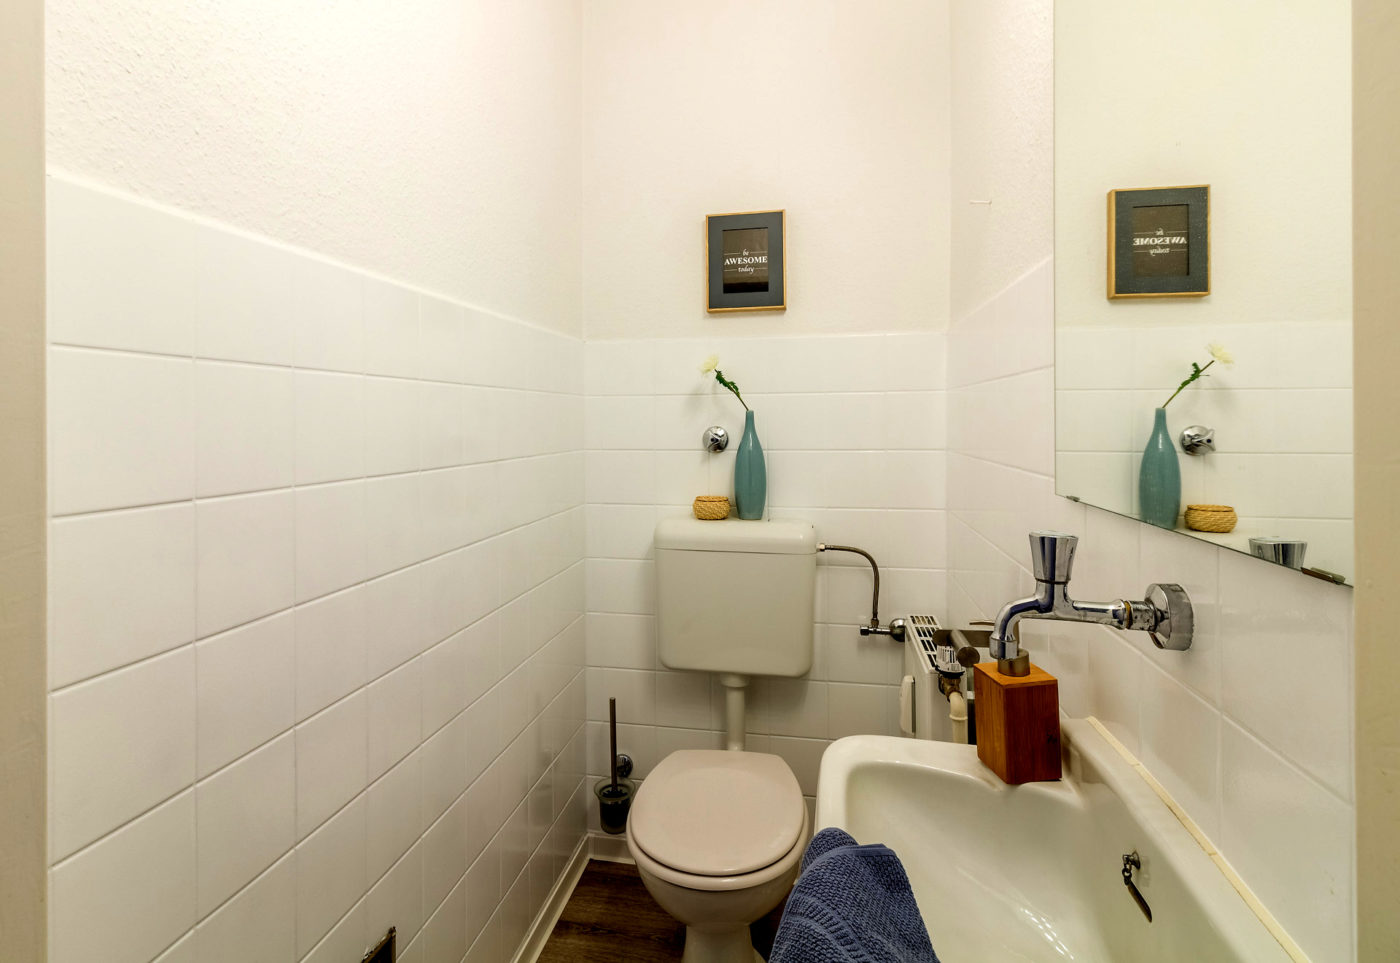 Gäste-WC nach dem Homestaging durch Nicole Biernath von Blickfang Homestaging in Soest